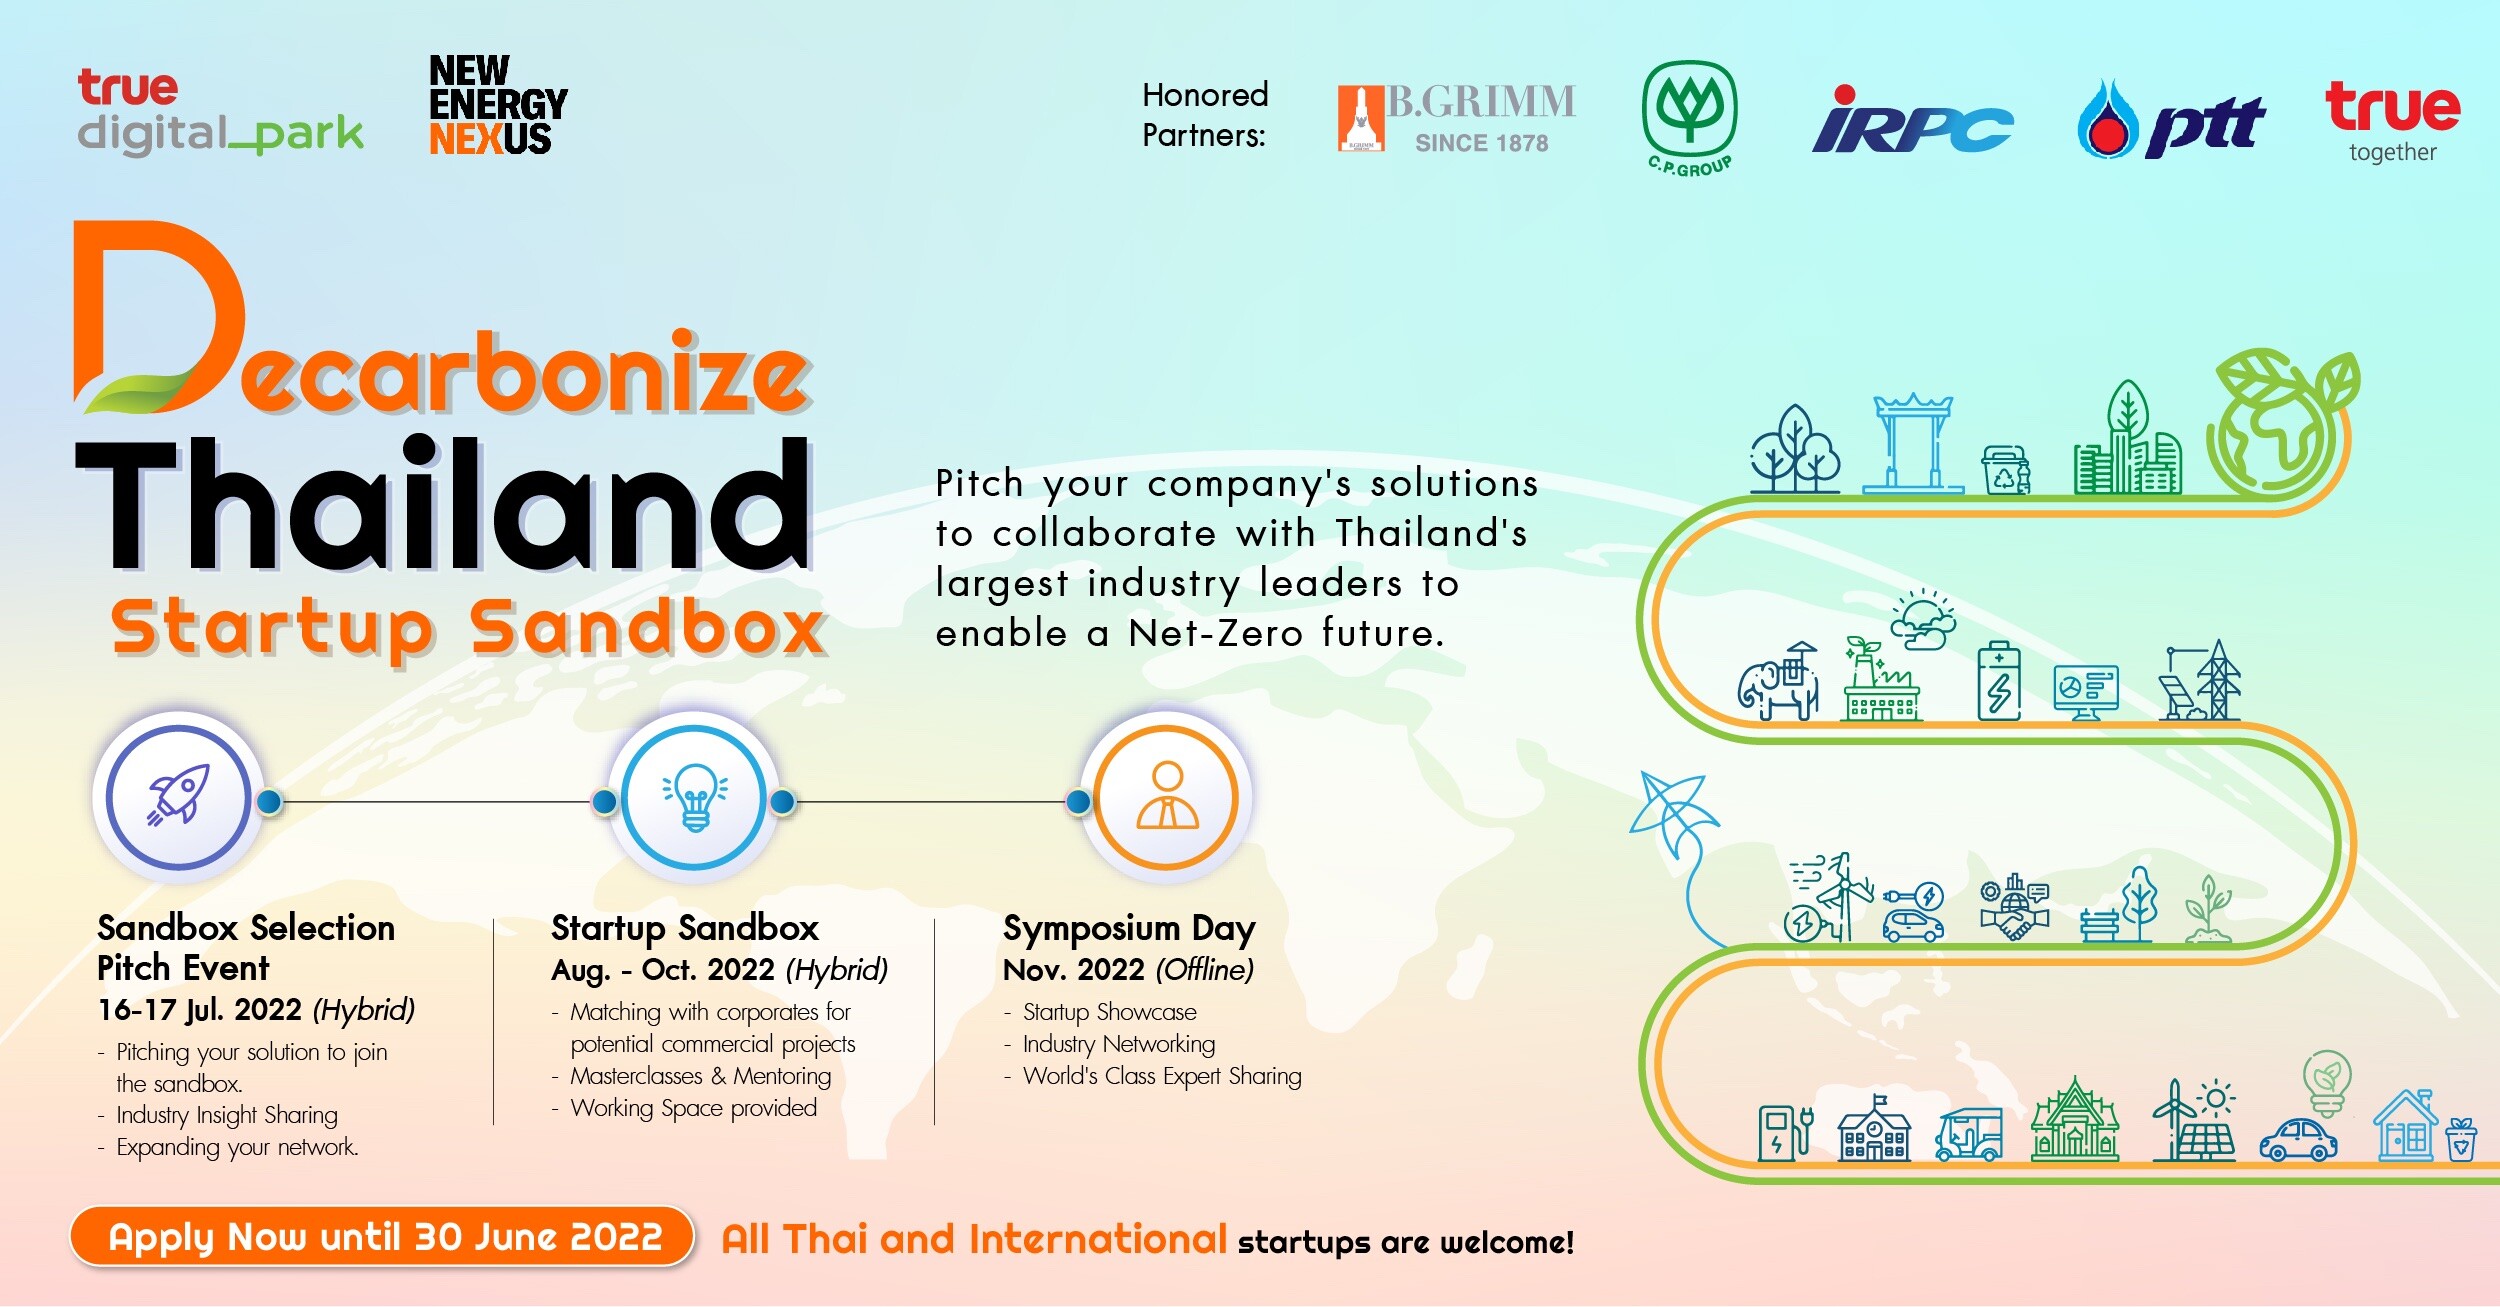 ทรู ดิจิทัล พาร์ค จับมือ นิวเอนเนอร์จี้ เน็กซัส (ประเทศไทย) เปิดตัว "Decarbonize Thailand Startup Sandbox" พร้อมผนึกกำลัง 5 พันธมิตรองค์กรชั้นนำ